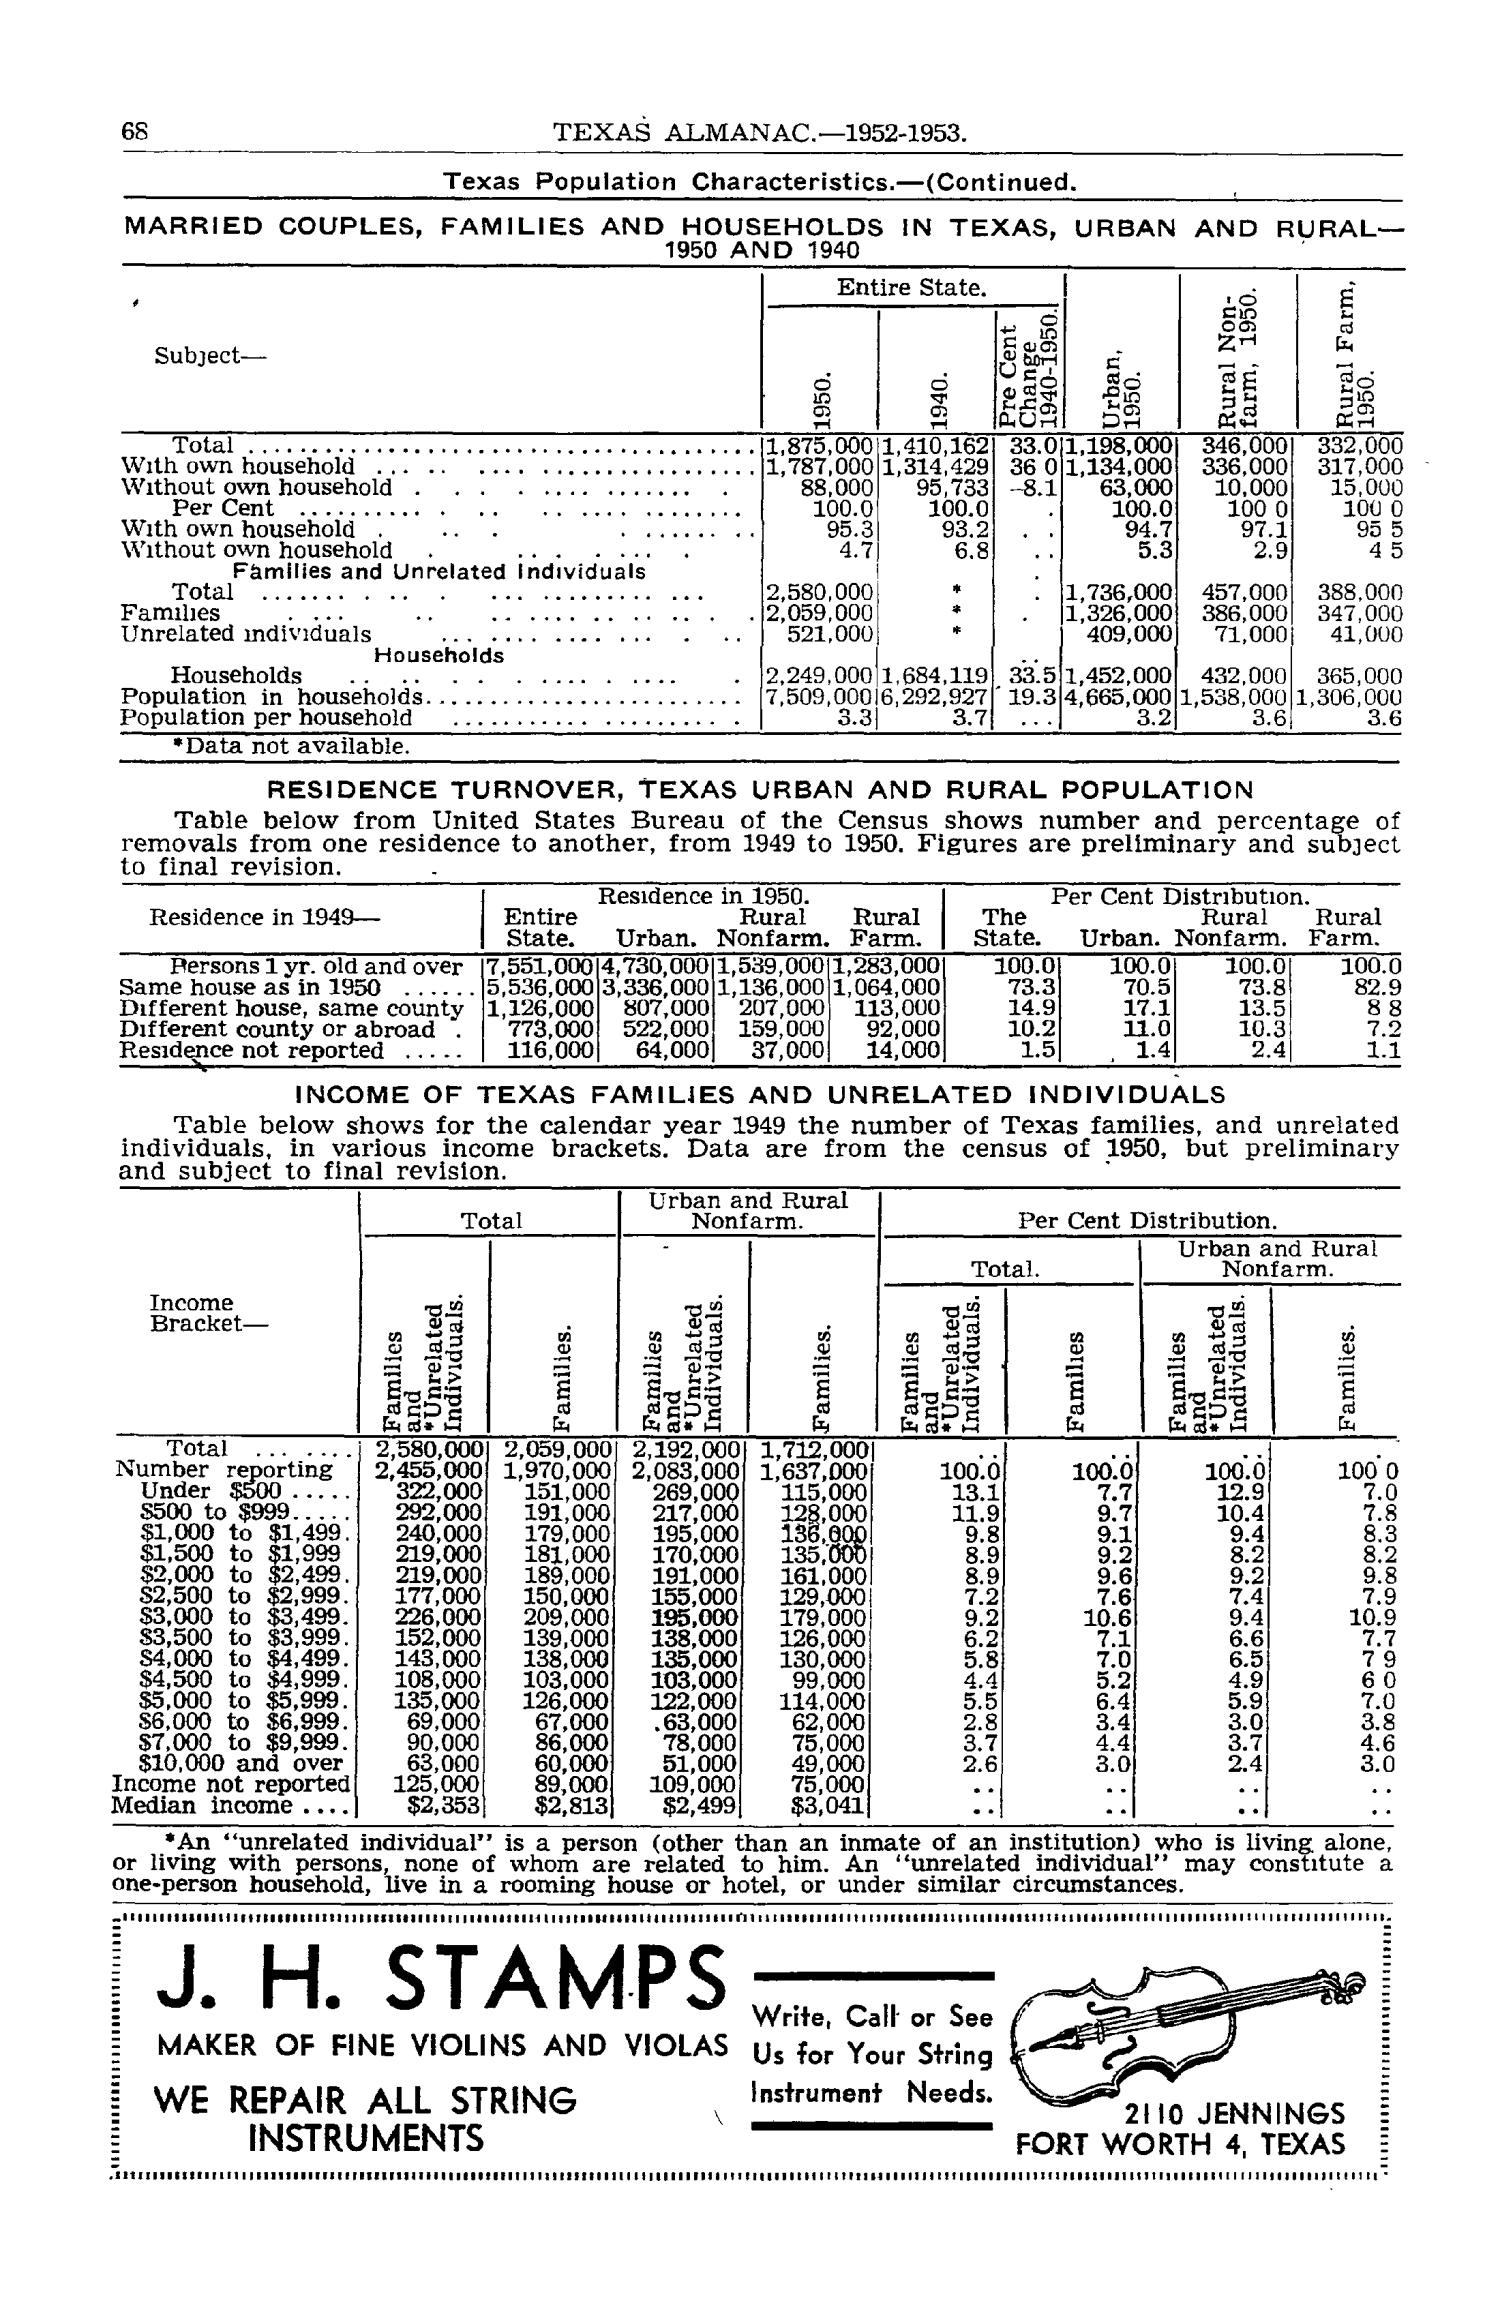 Texas Almanac, 1952-1953
                                                
                                                    68
                                                